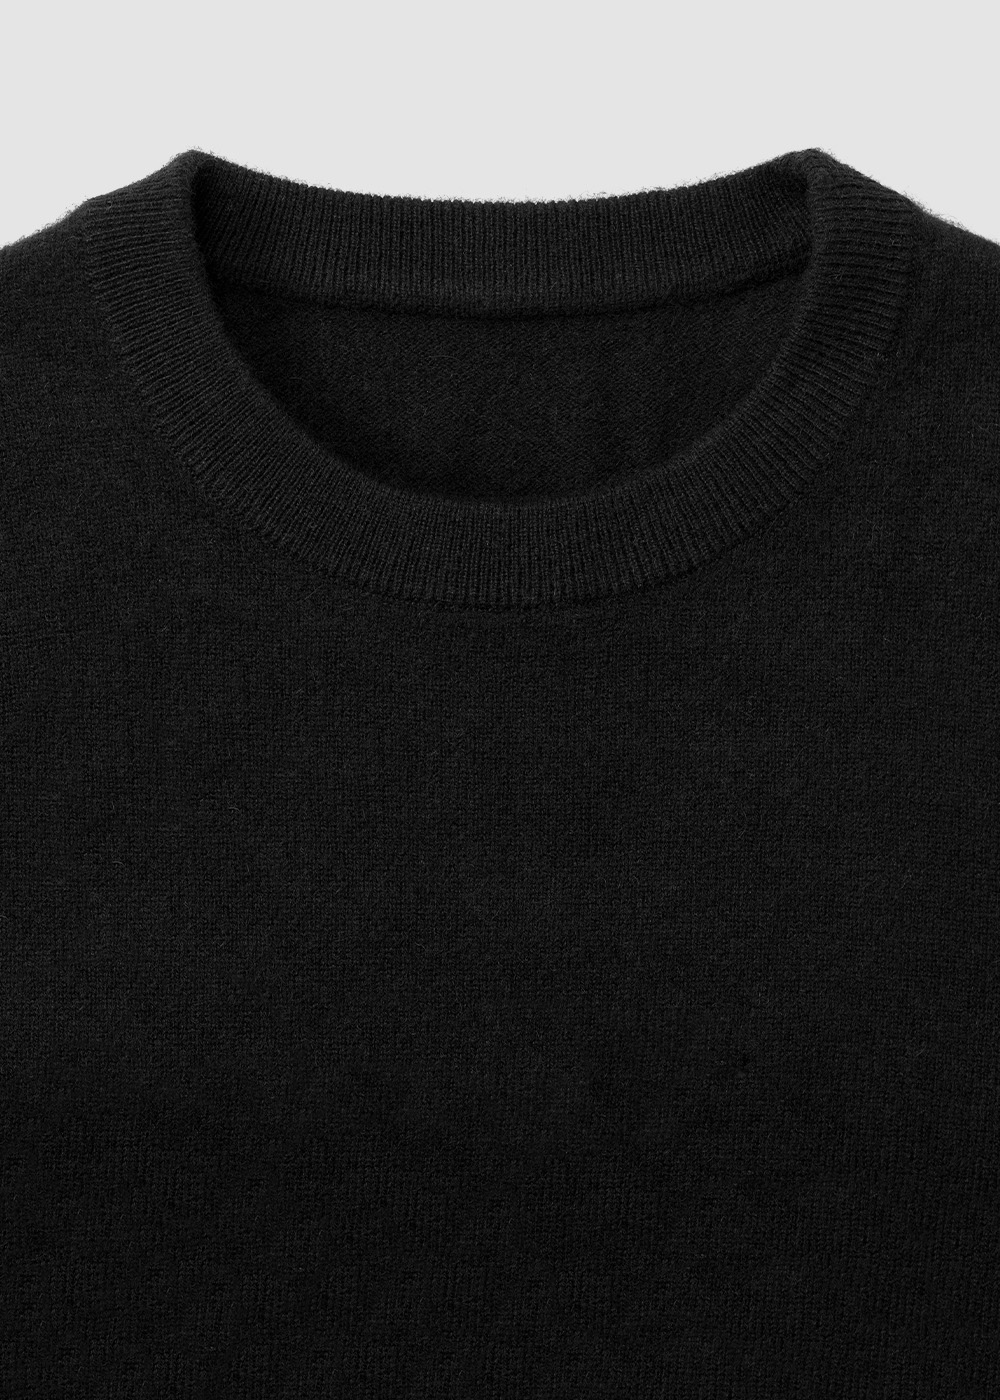 Cashmere 10% Blended Crewneck Knit _ black